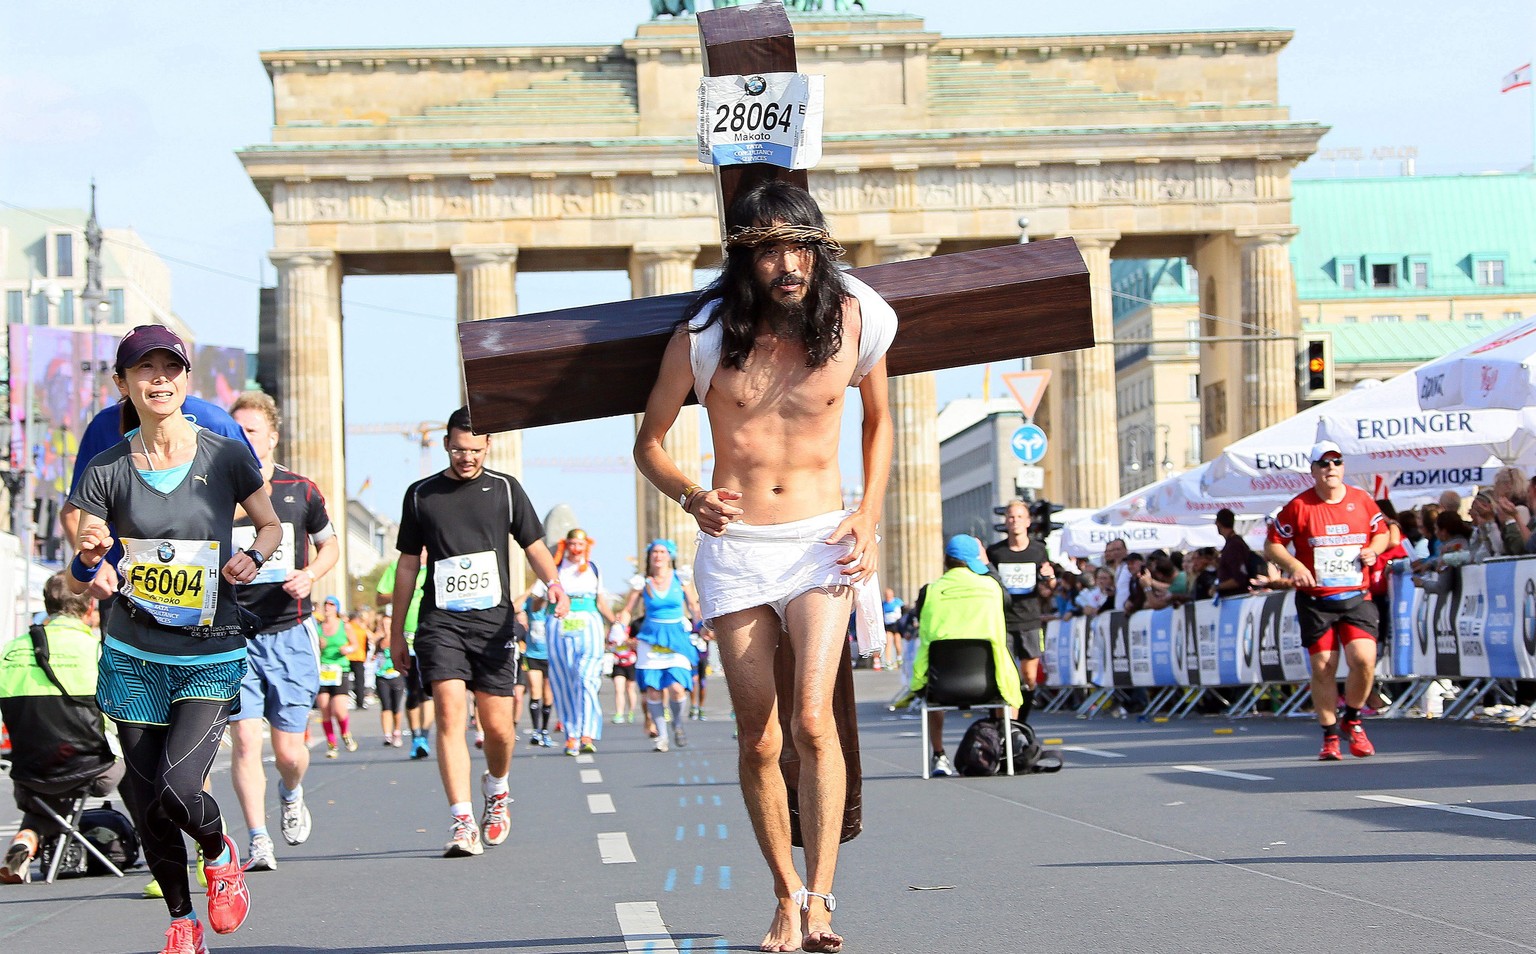 Da staunen sie alle: Der Japaner Makuto läuft als Jesus verkleidet den Berliner Marathon.